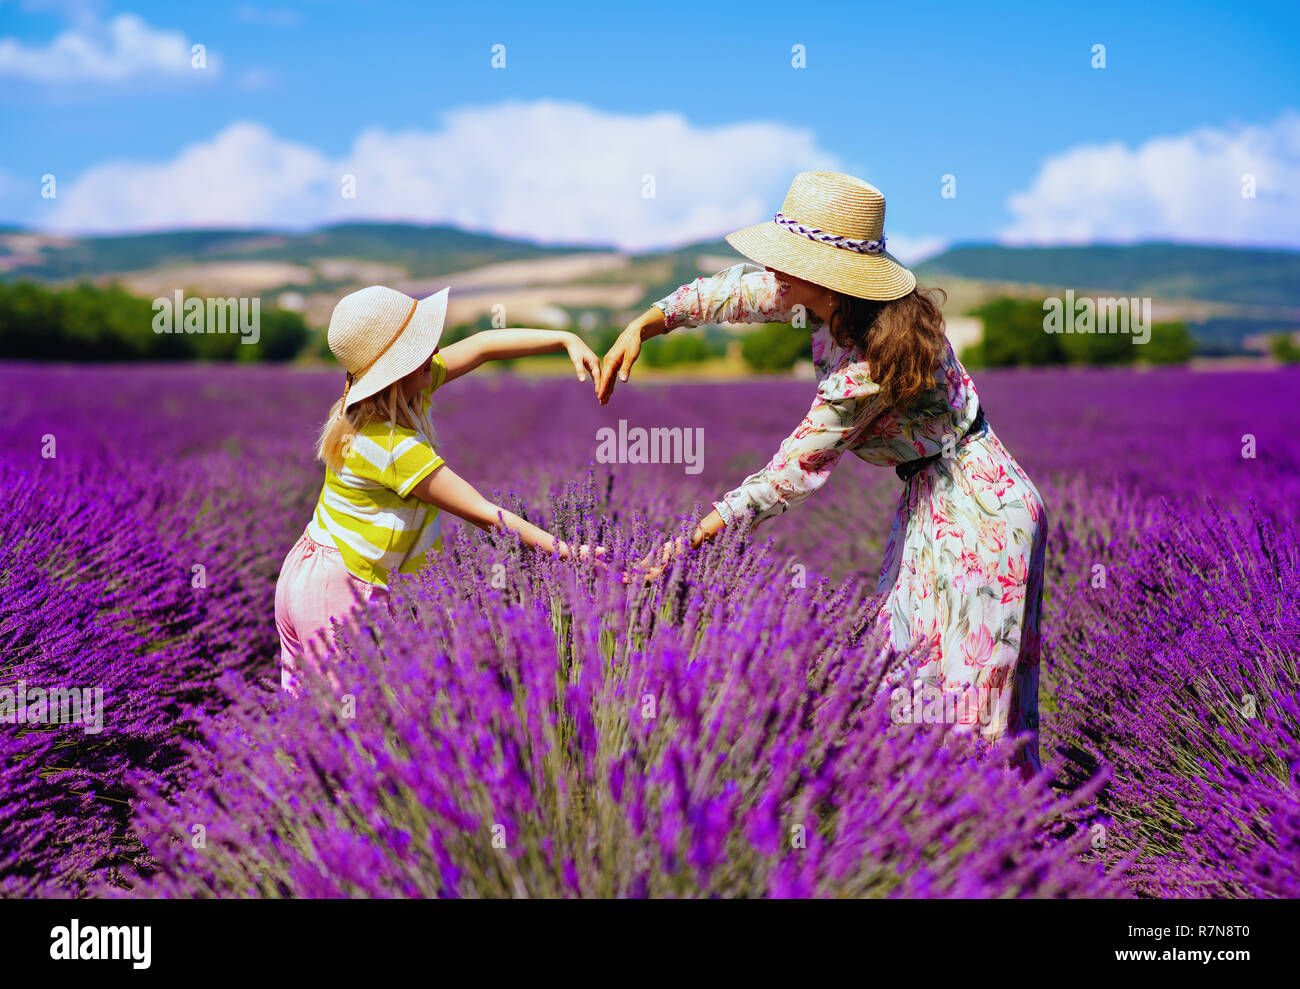 Trendy Mutter und Kind Herz mit Hände an lavendelfeld in der Provence, Frankreich. Provence ist am besten Landschaft inspirieren, Mutter und Kind memorab zu erhalten Stockfoto